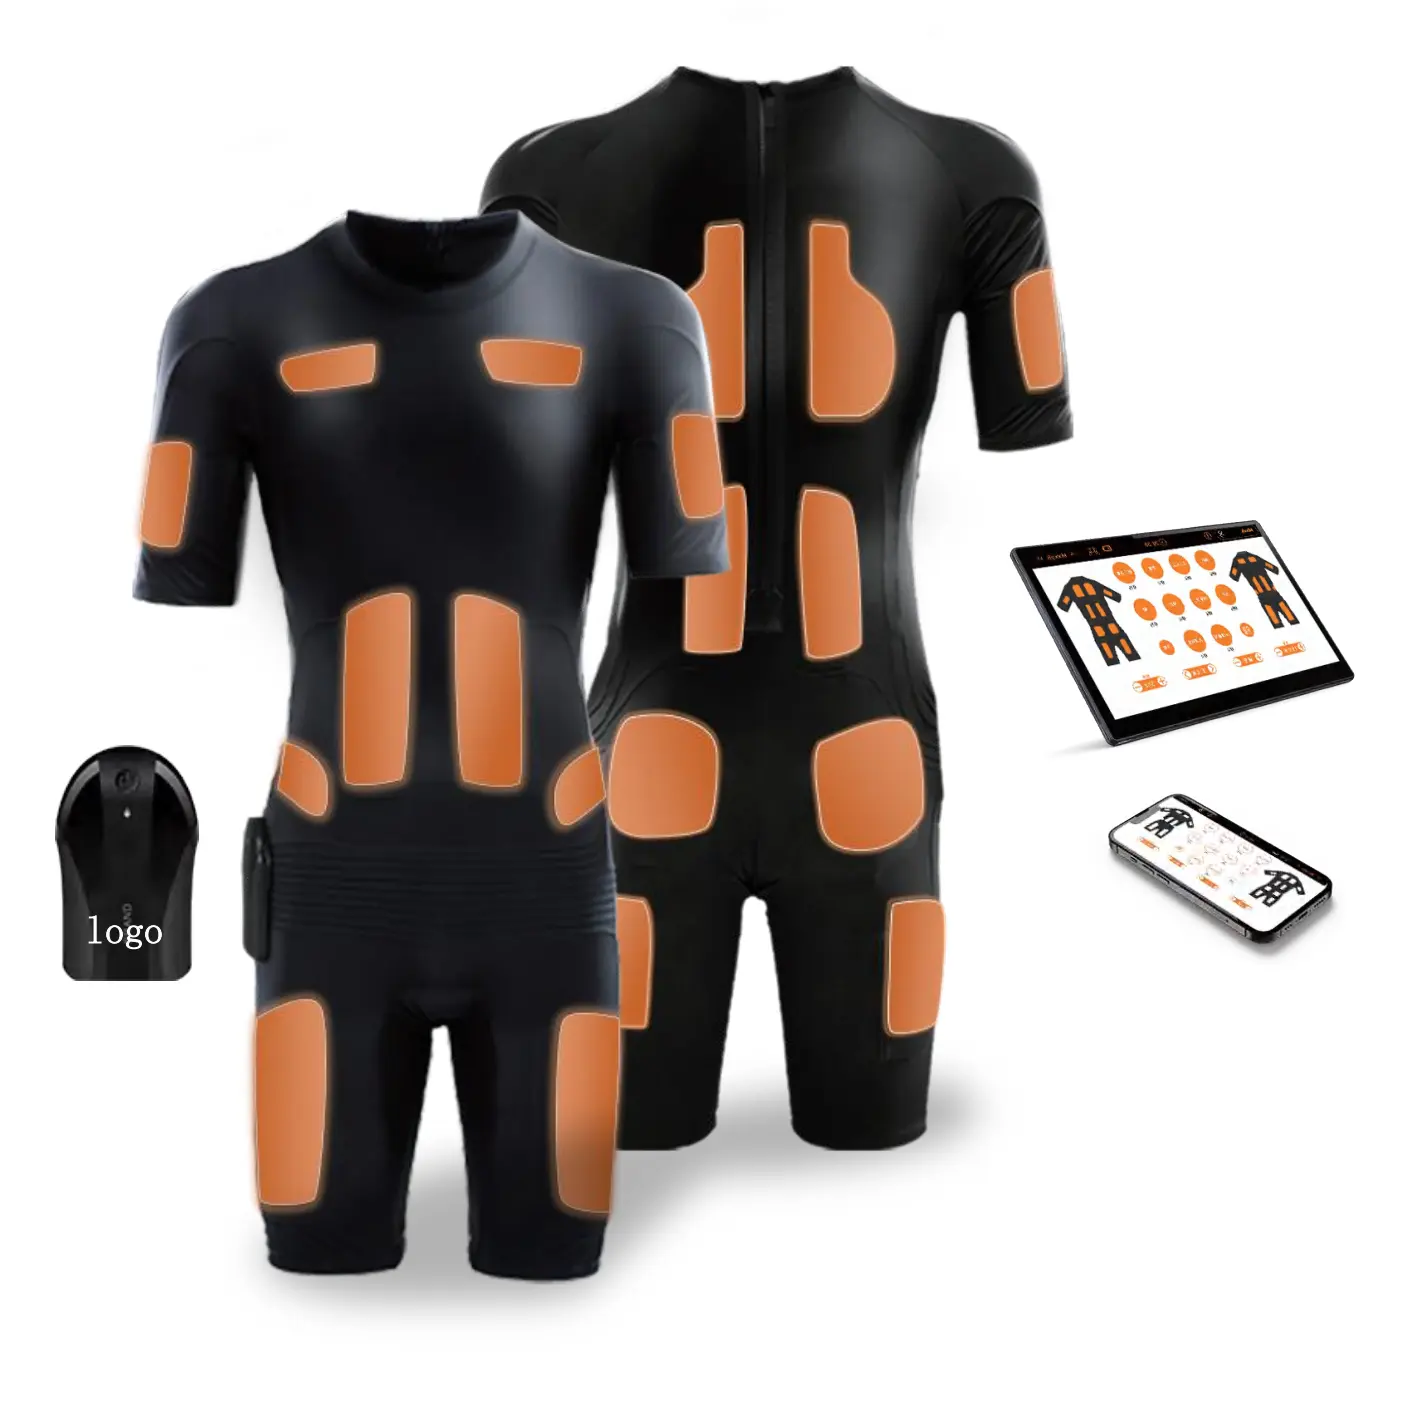 EMS kabelloser Anzug Training Ems Abnehmen Körper Fitness-Studio Version EMS Anzug mit professionellem System Schweiß-Aerobic